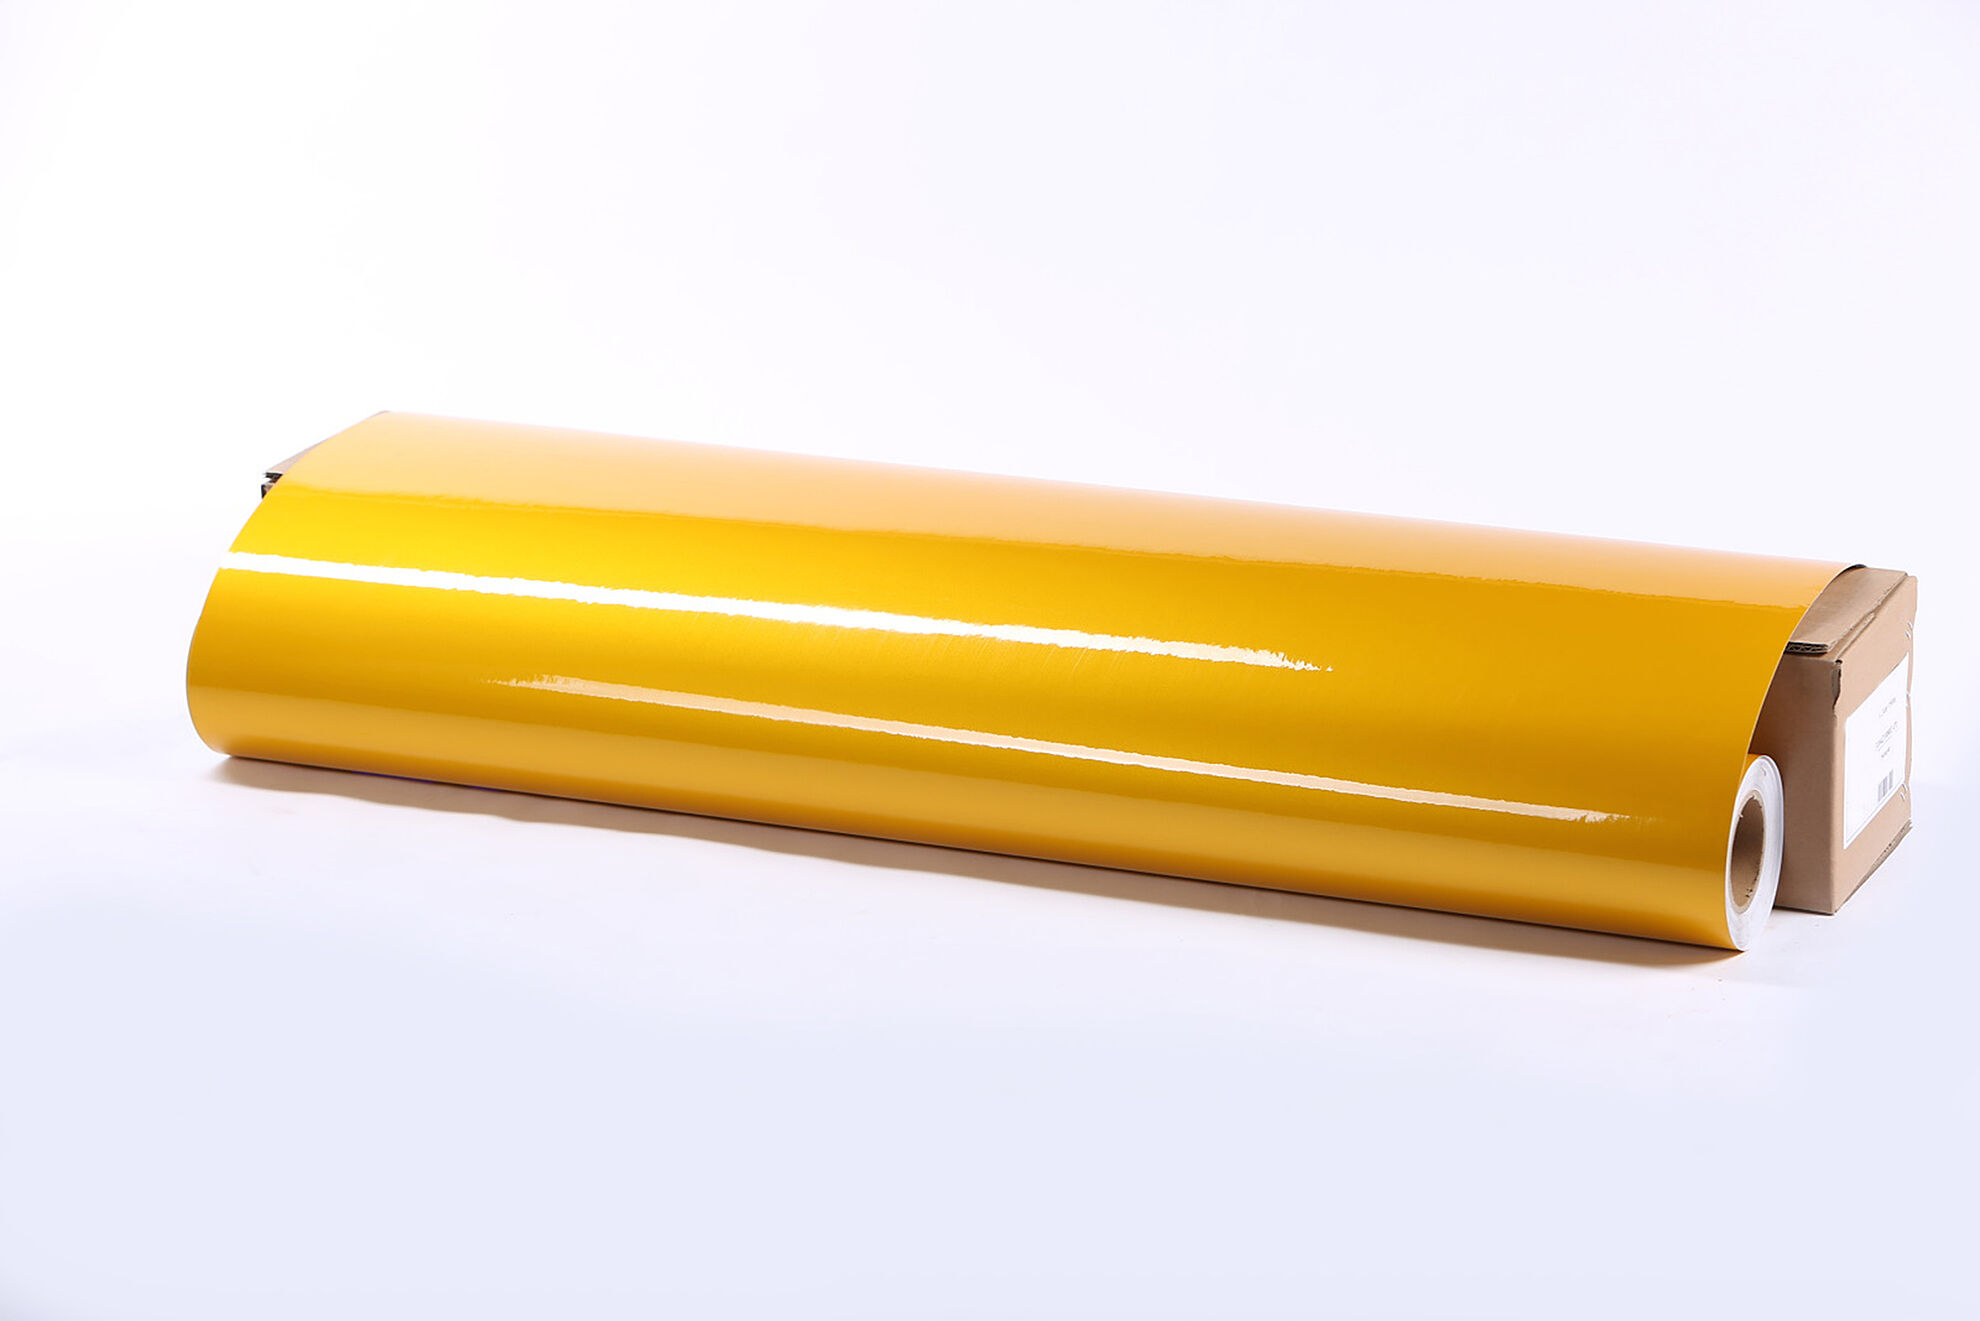 Световозвращающая пленка Lucentis LCR-5000 печатная желтая , тип А, класс I 1,22*45,7 м (с маркировкой)